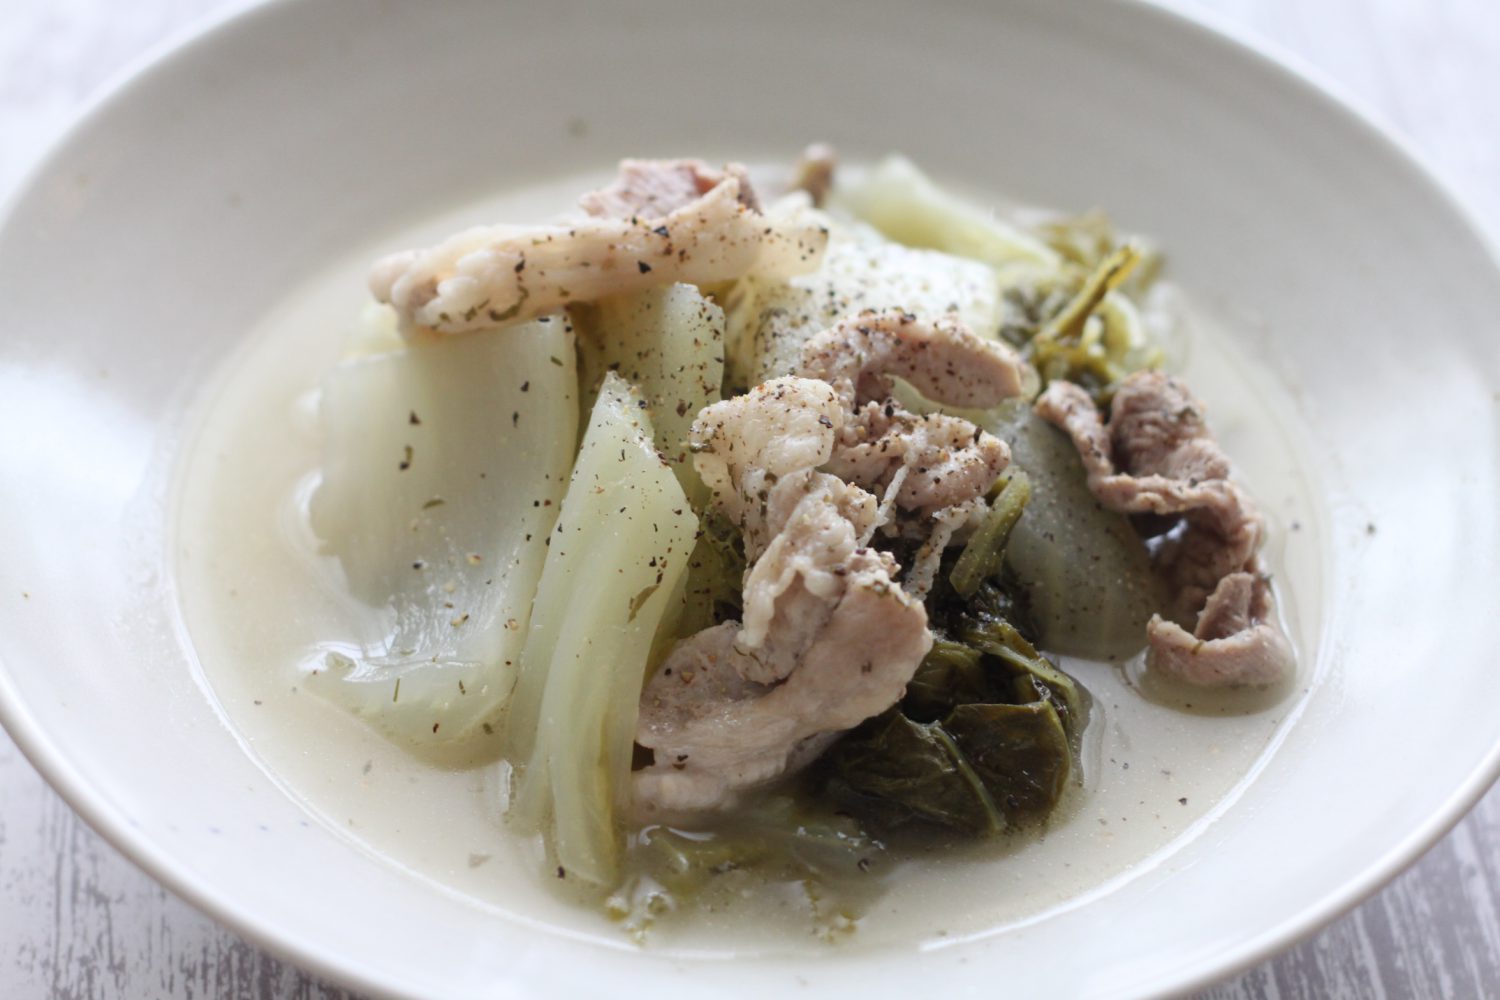 大葉塩ダレだけで作る豚肉と白菜のスープ